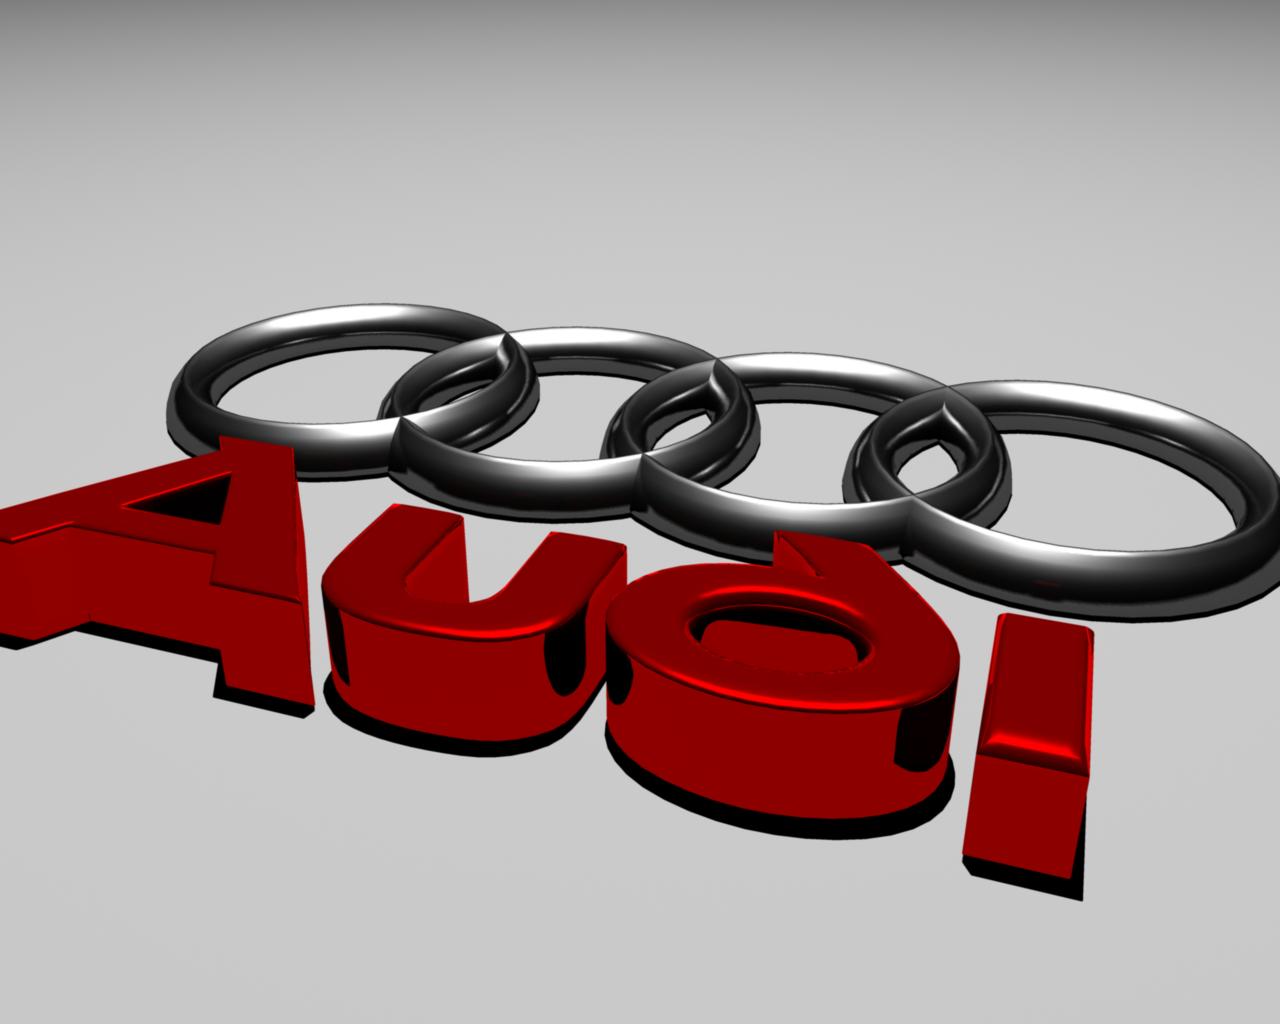 Audi Logo PNG Transparent – Brands Logos